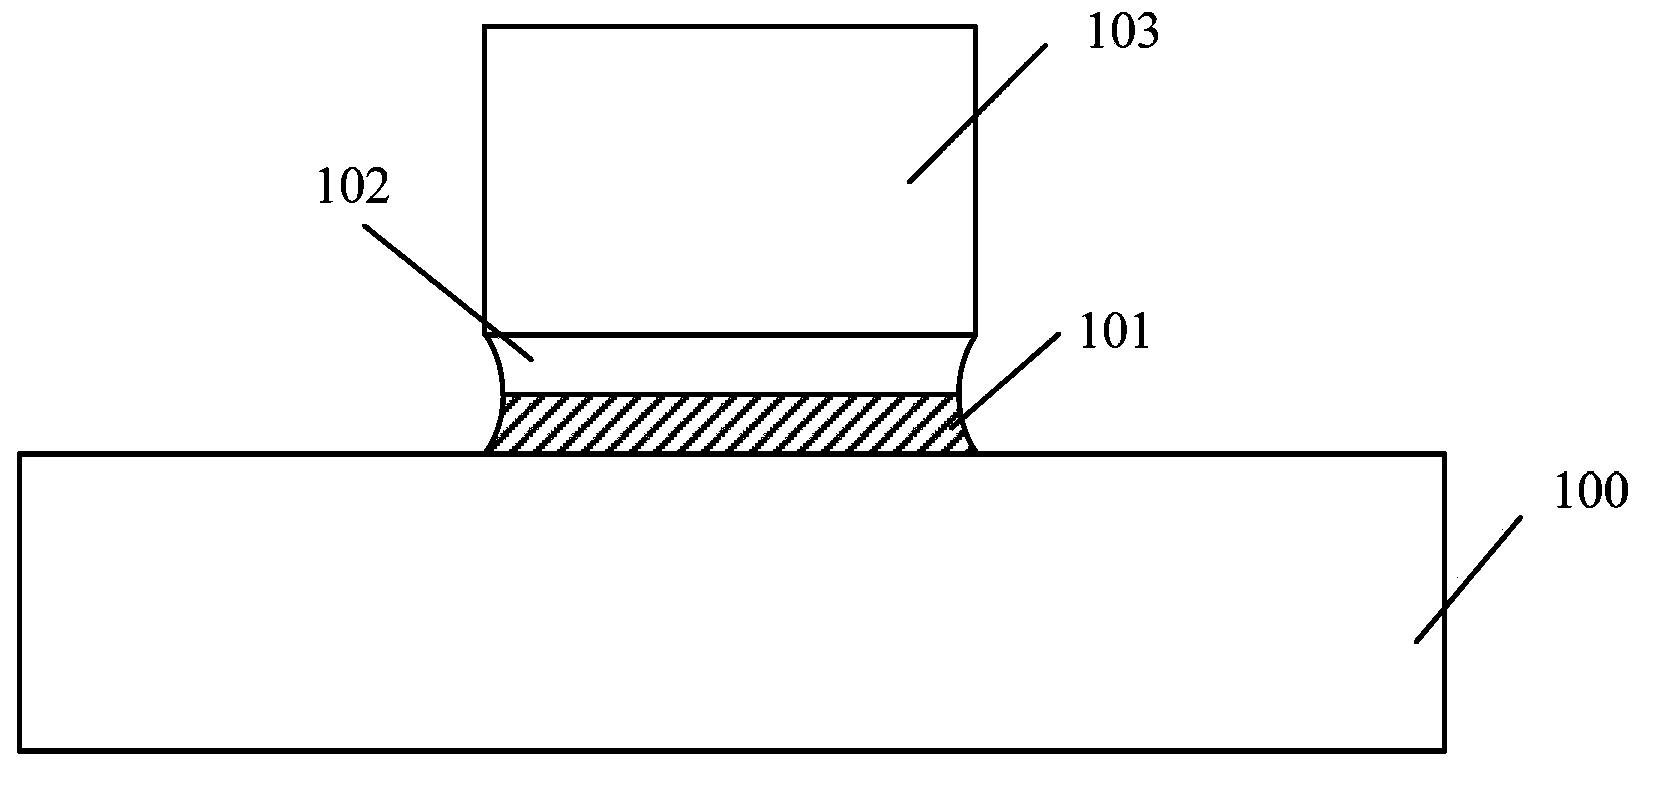 Method for forming gate electrode